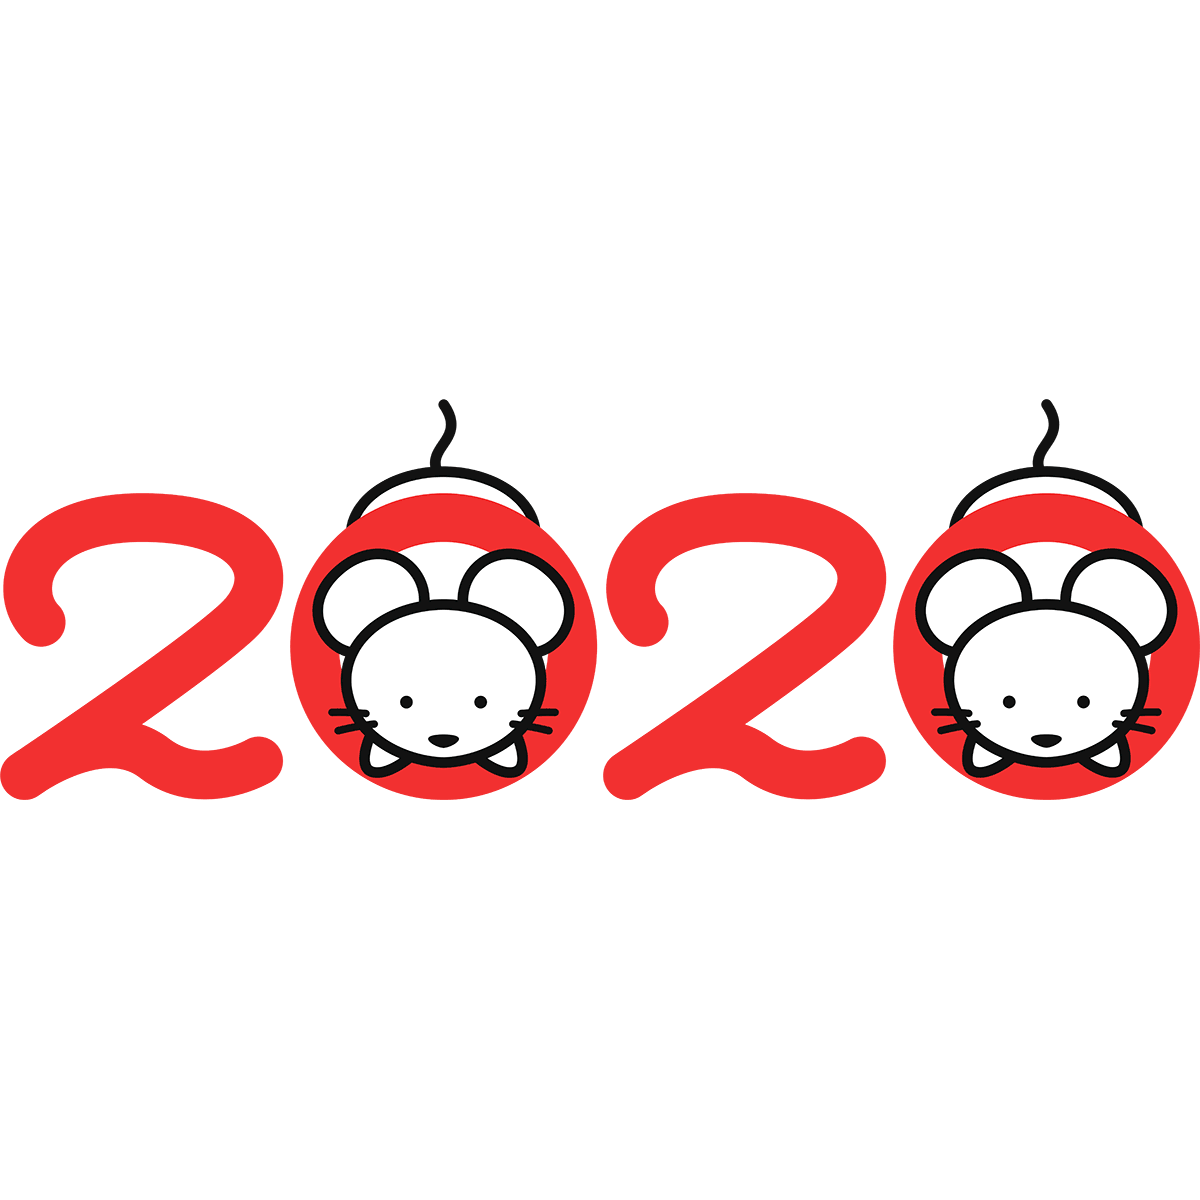 2020年の年賀状（2匹のネズミ）の無料イラスト